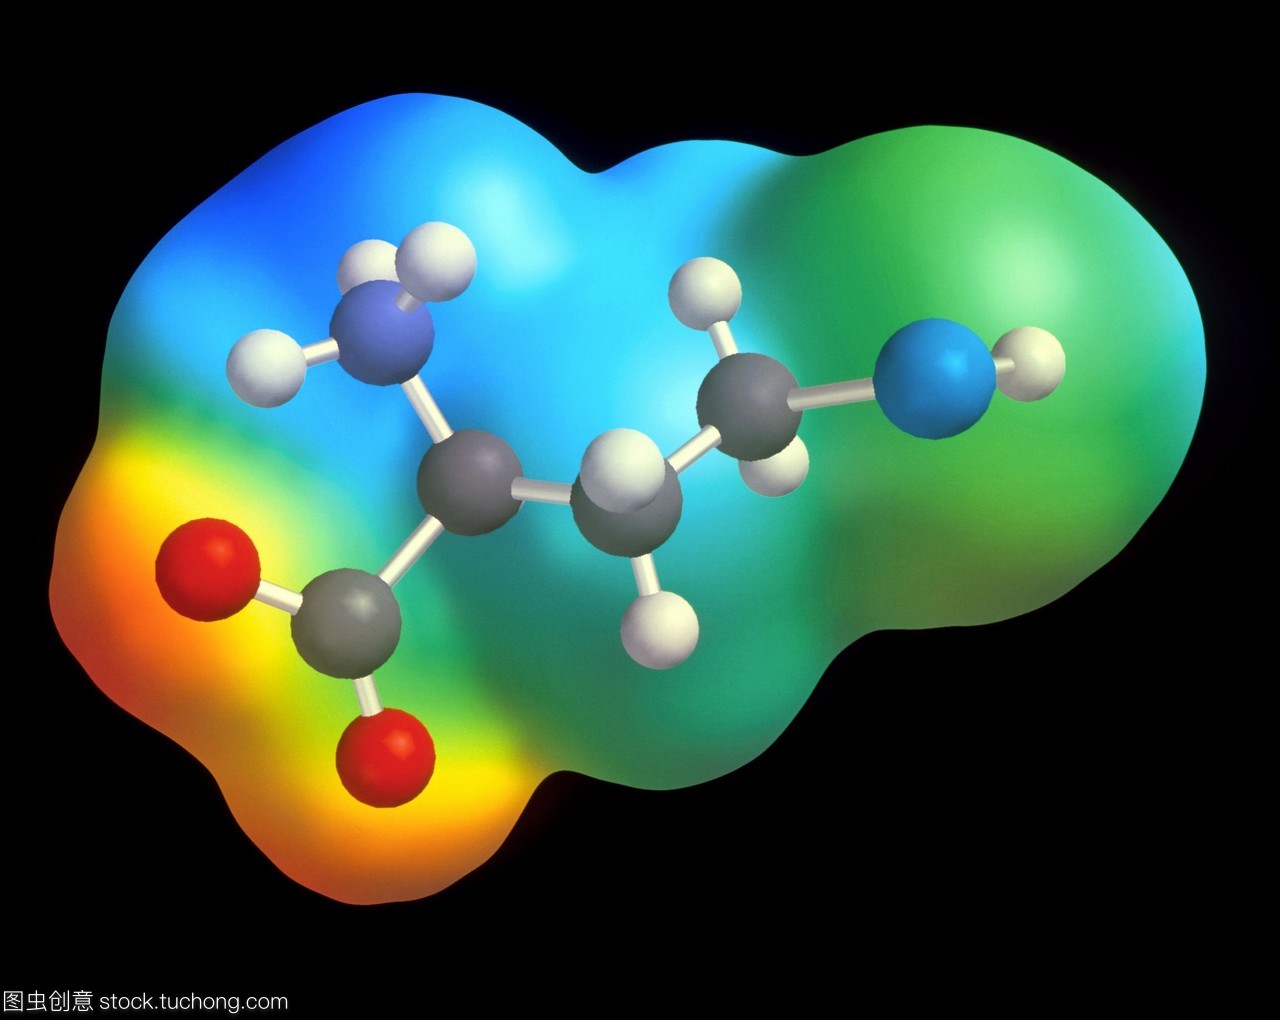 同型半胱氨酸。一种半胱氨酸分子的电脑绘图,是合成氨基酸半胱氨酸的中间体。原子被描绘成球体,而木棍则代表将原子连接在一起的化学键。原子有颜色编码碳灰色,氧气红色,氮深蓝色,硫浅蓝色和氢白色。分子被彩色电子密度图所覆盖。半胱氨酸是许多酶的重要组成部分。遗传性疾病同型胱氨酸是由血液中过多的同型半胱氨酸引起的。患者智力发育迟缓,腿骨和手指过长。